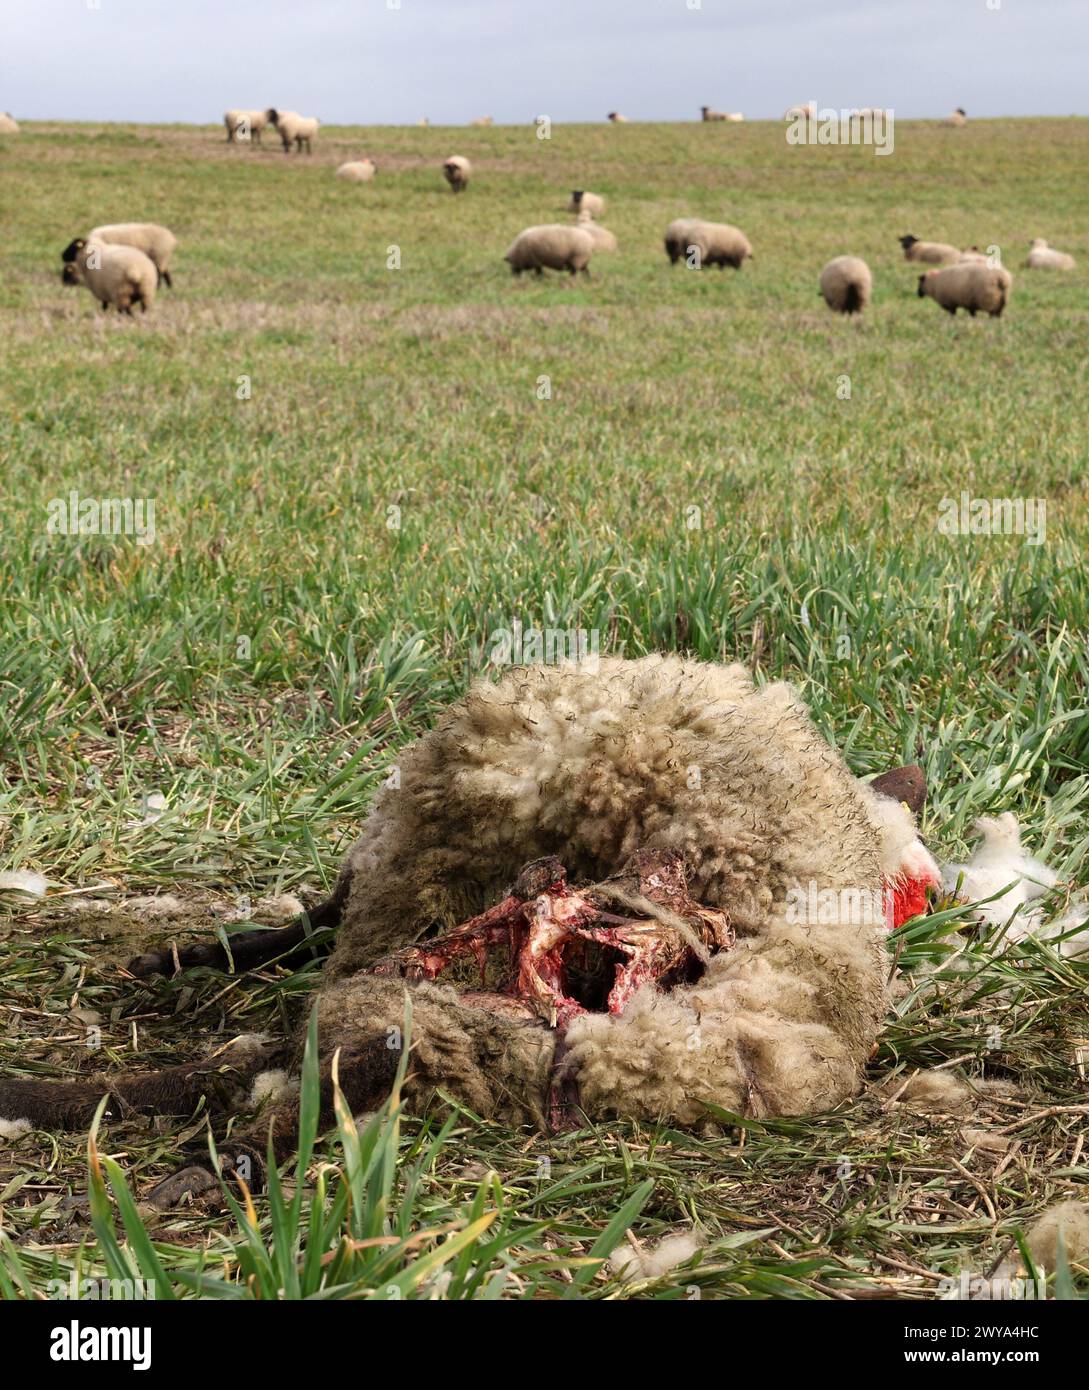 5 aprile 2024, Meclemburgo-Pomerania occidentale, Bad Sülze: Una pecora morta del gregge del pastore Ingo Stoll giace nel prato, altri animali pascolano sullo sfondo. In quello che si ritiene essere il terzo attacco da parte dei lupi quest'anno, 19 animali del gregge sono stati uccisi. Foto: Bernd Wüstneck/dpa Foto Stock